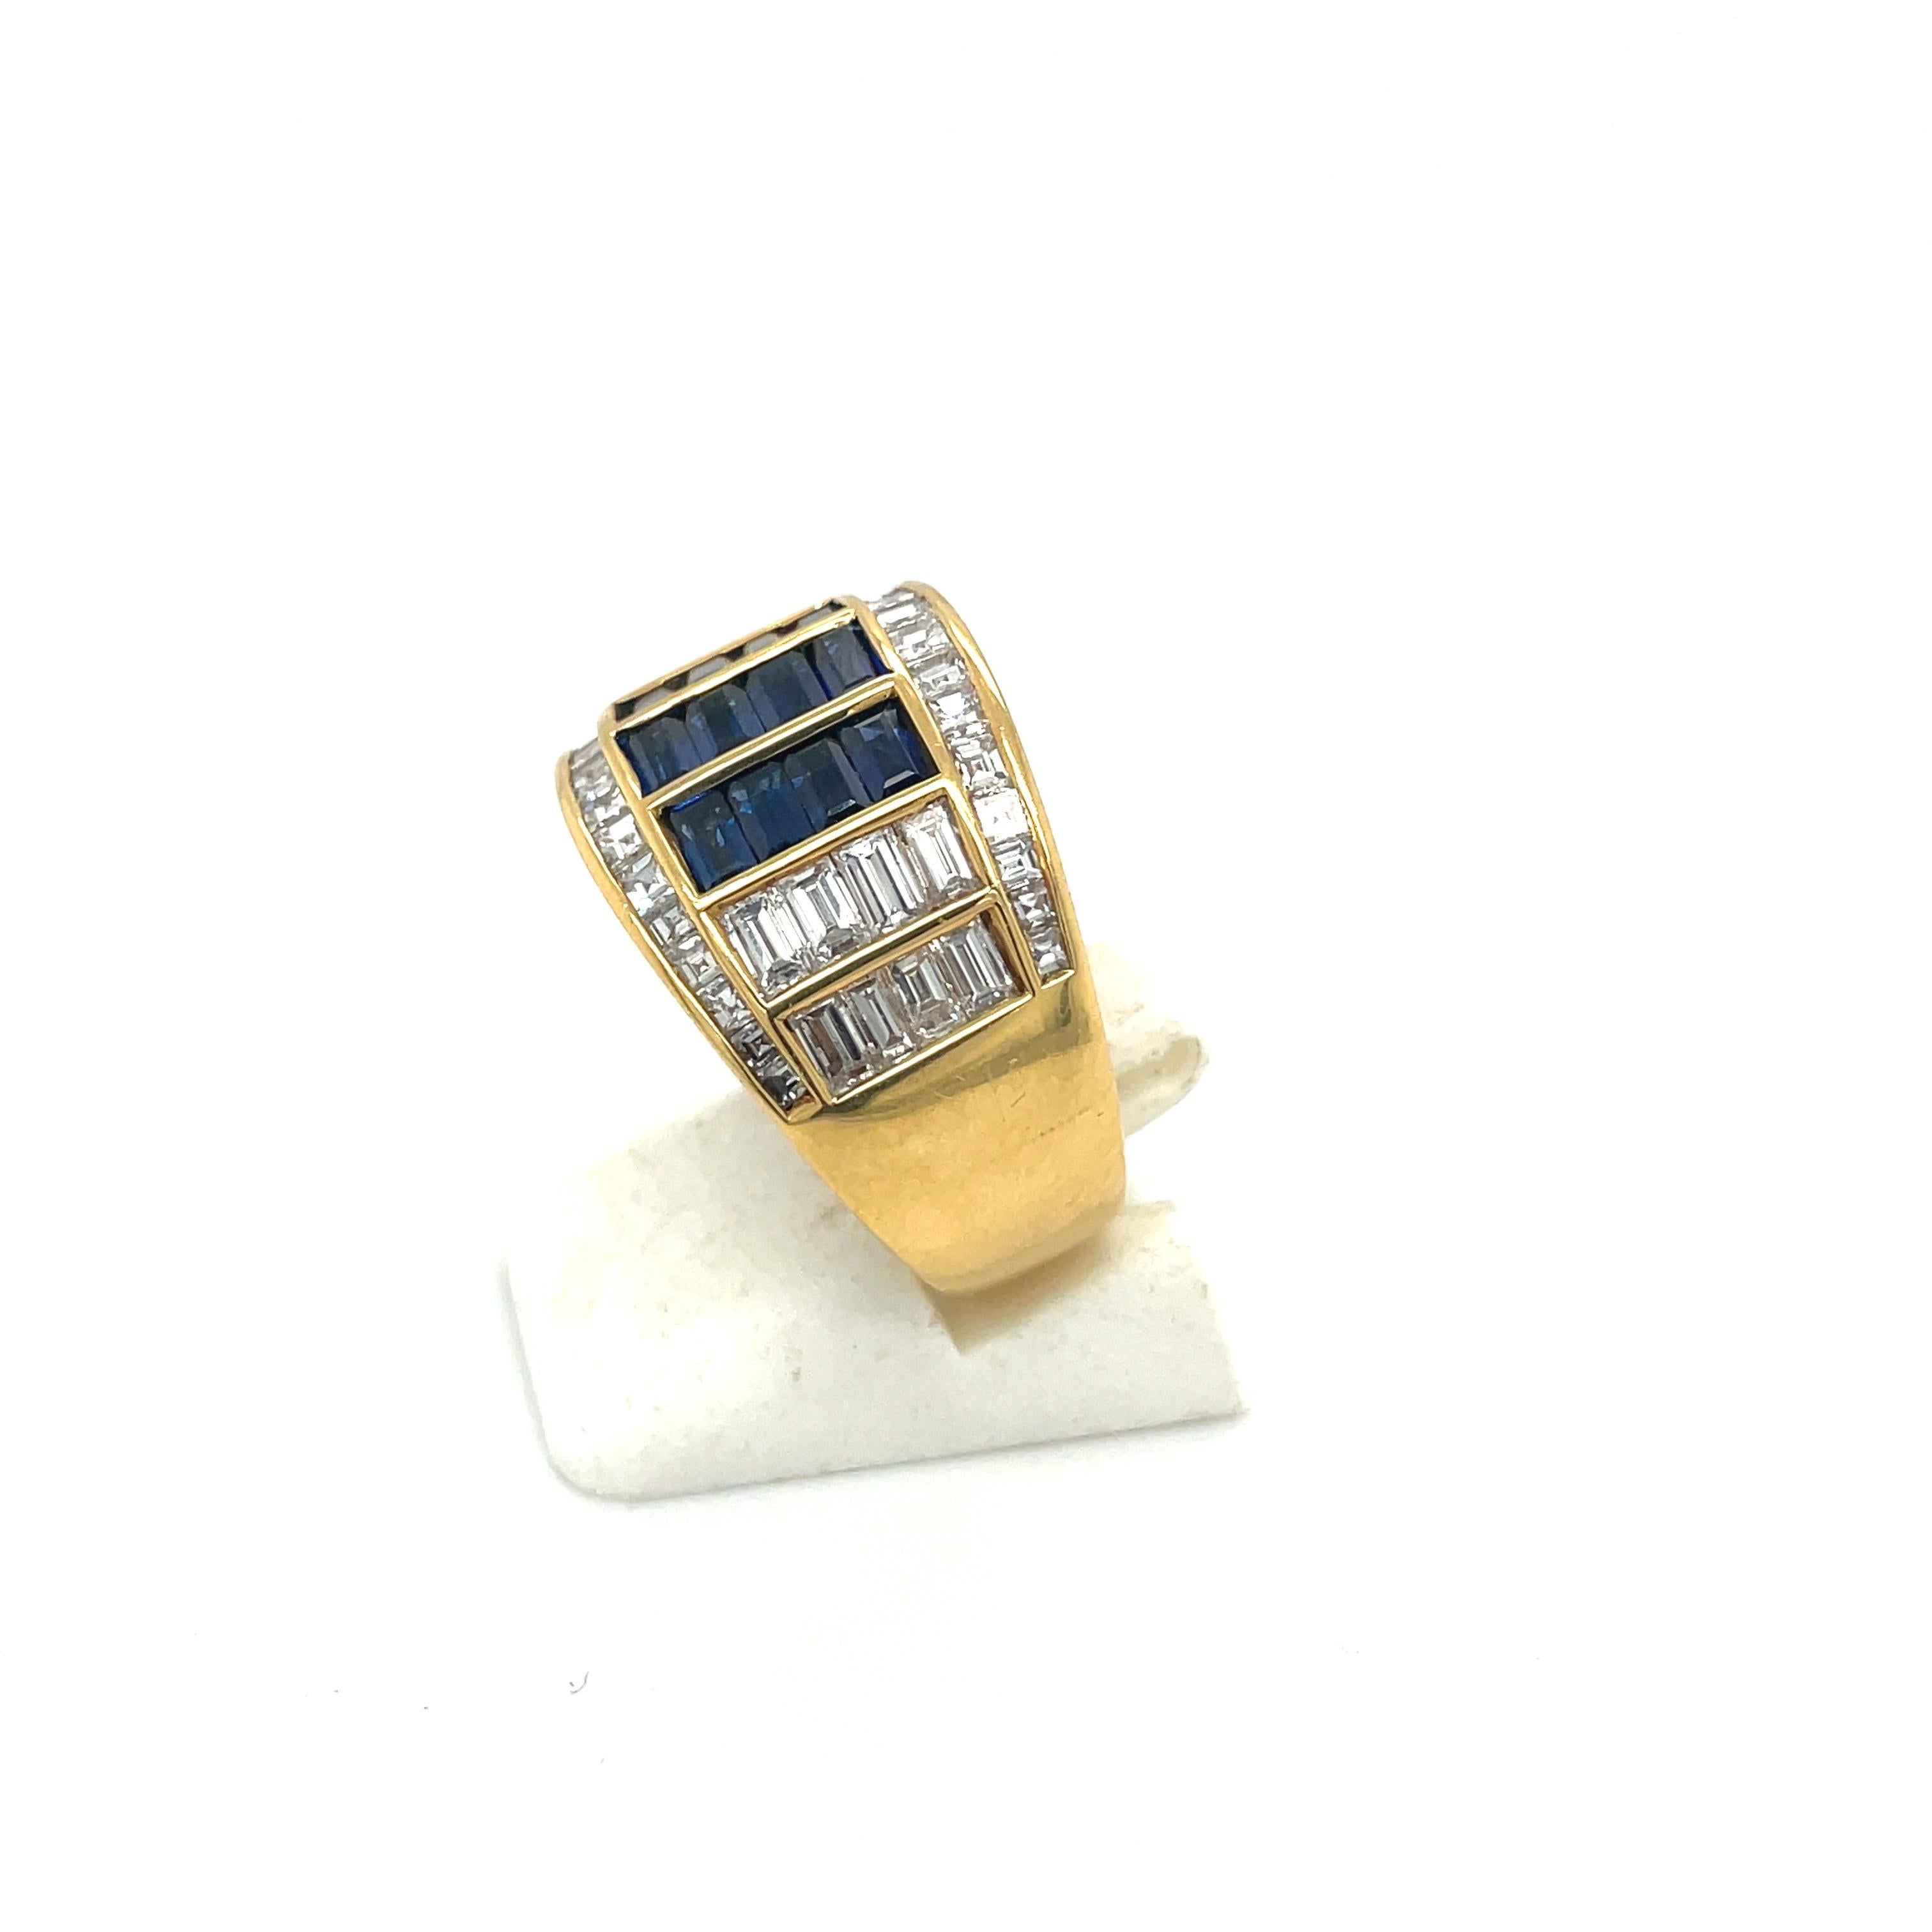 Entworfen von Meister Giuseppe Picchiotti. Cellini NYC präsentiert diesen Ring aus 18 Karat Gelbgold, der mit Diamanten im Baguetteschliff und quadratischen Diamanten sowie blauen Saphiren im Baguetteschliff besetzt ist. Der Ring misst an der